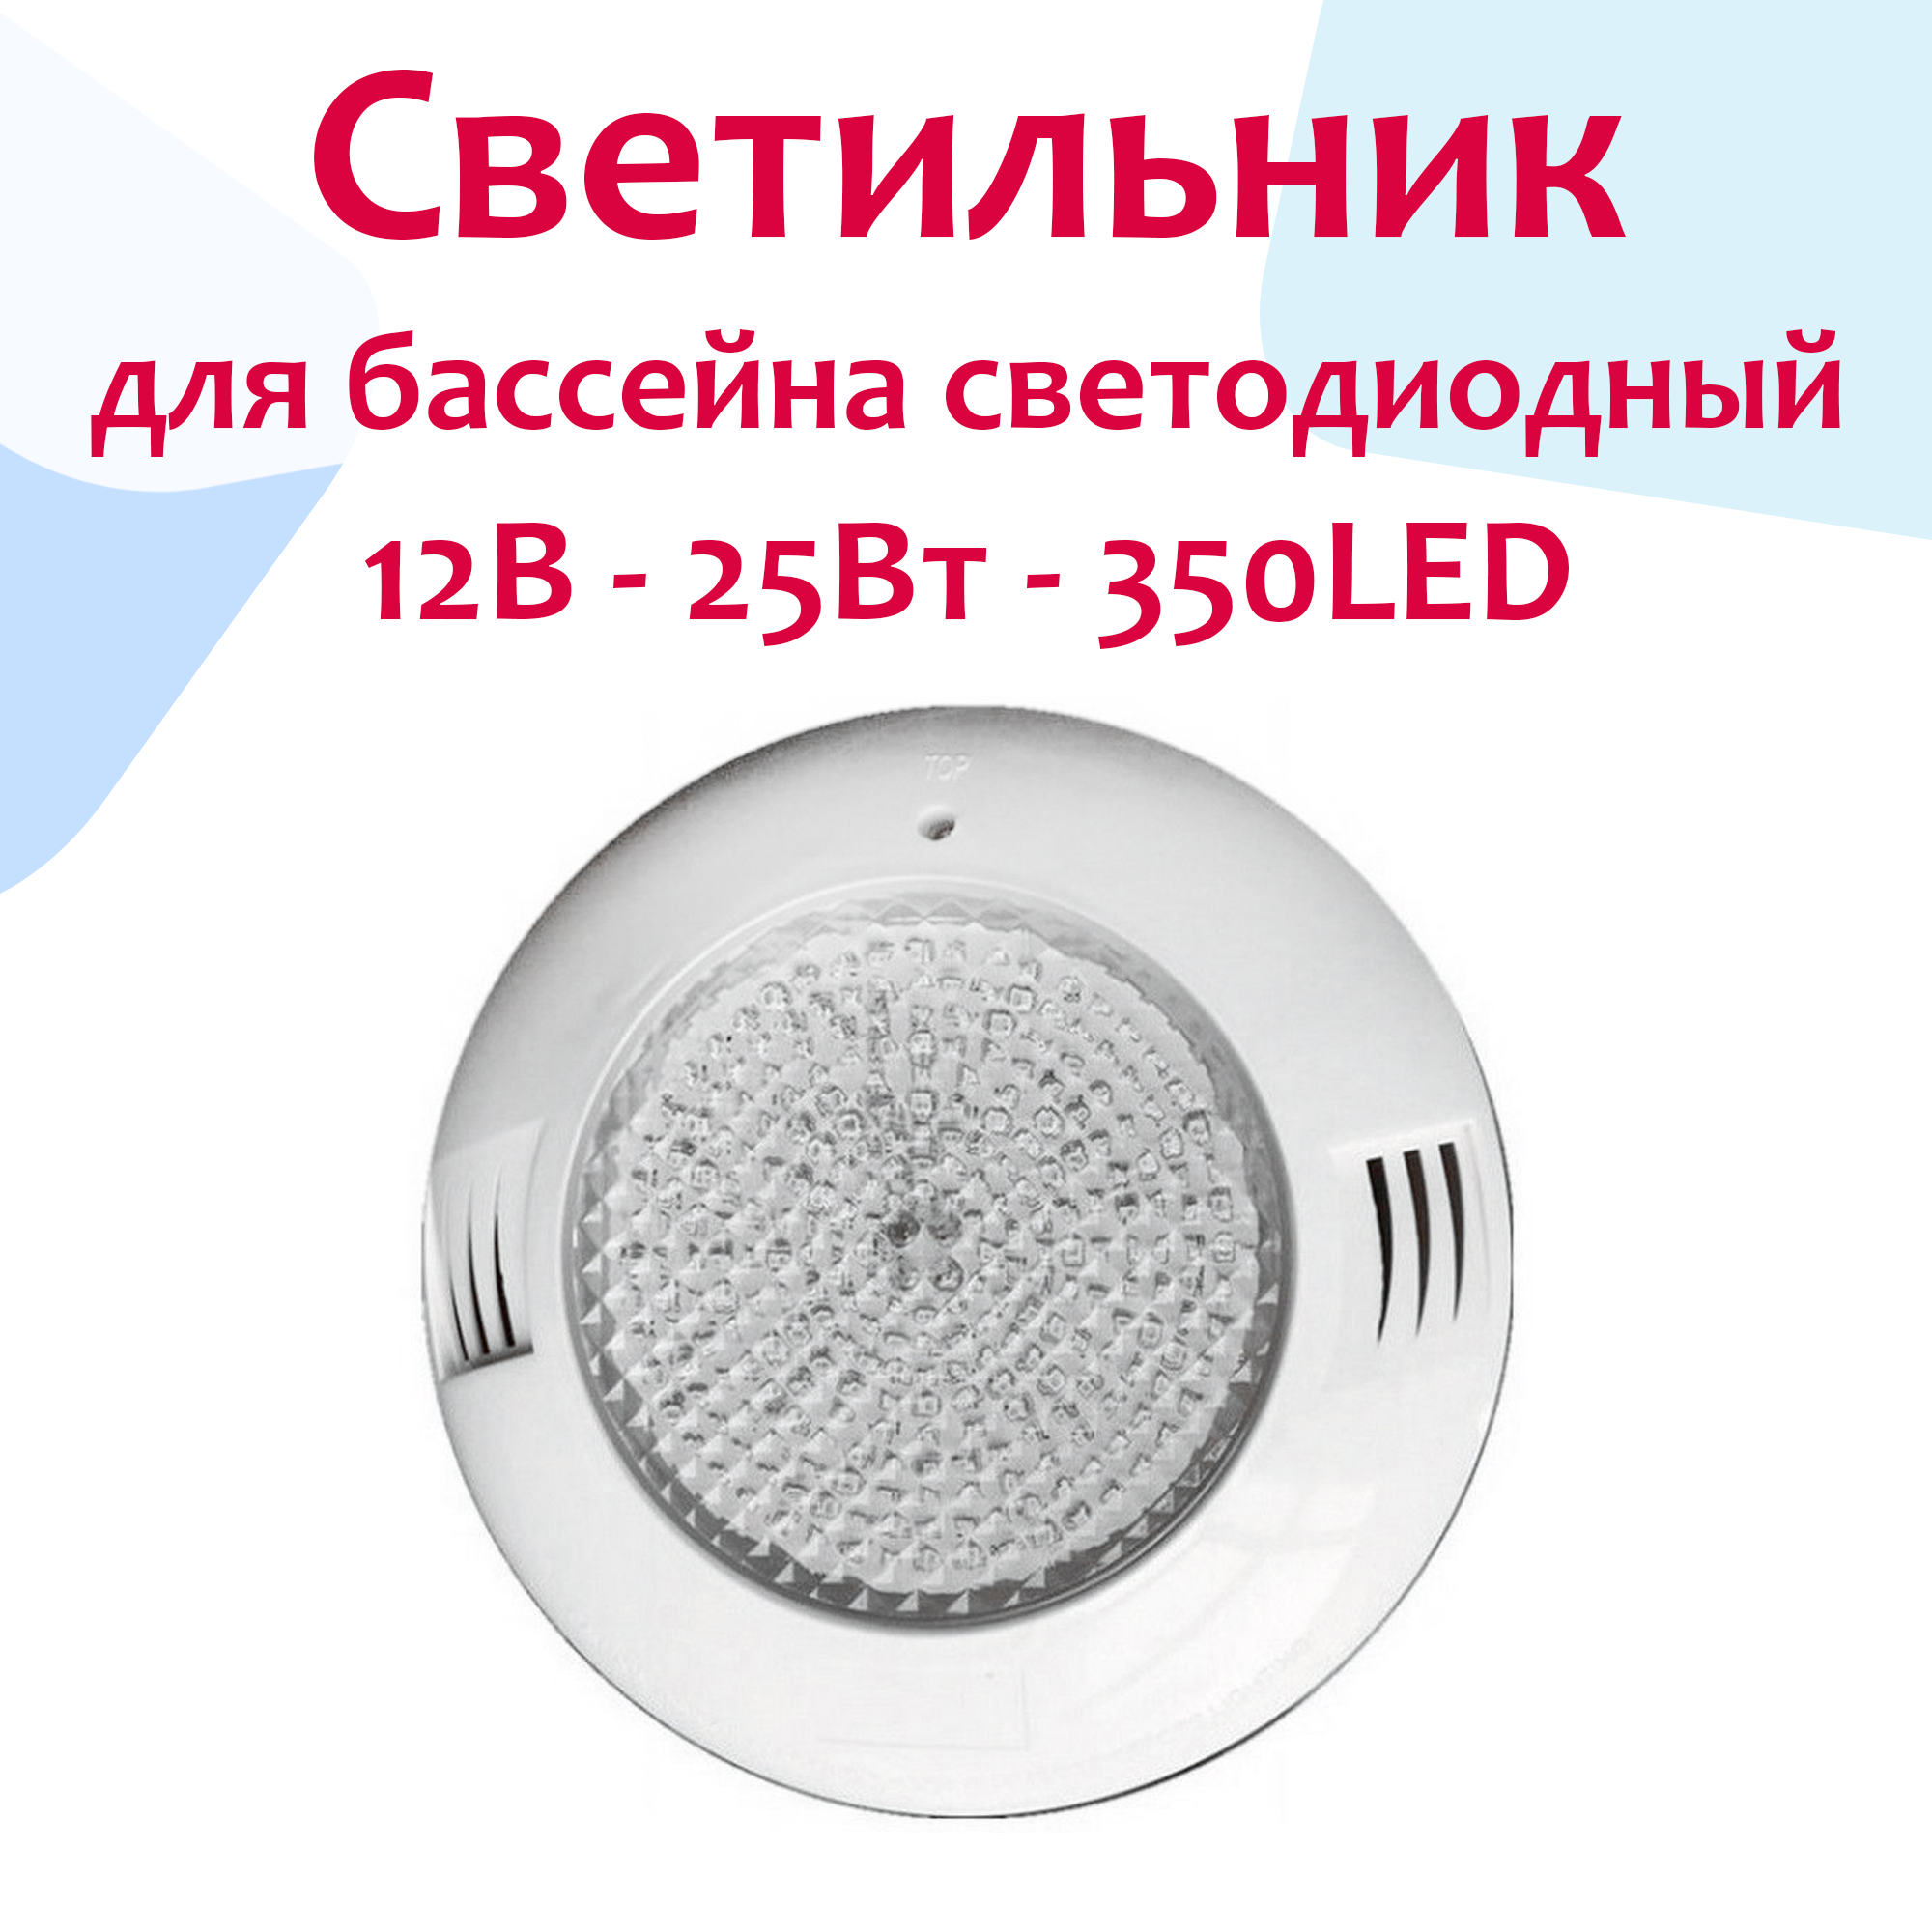 Светильник (прожектор) для бассейна светодиодный накладной под бетон - LED1, 25Вт - 12В/AC, 350LED, IP68, ABS-пластик - Emaux